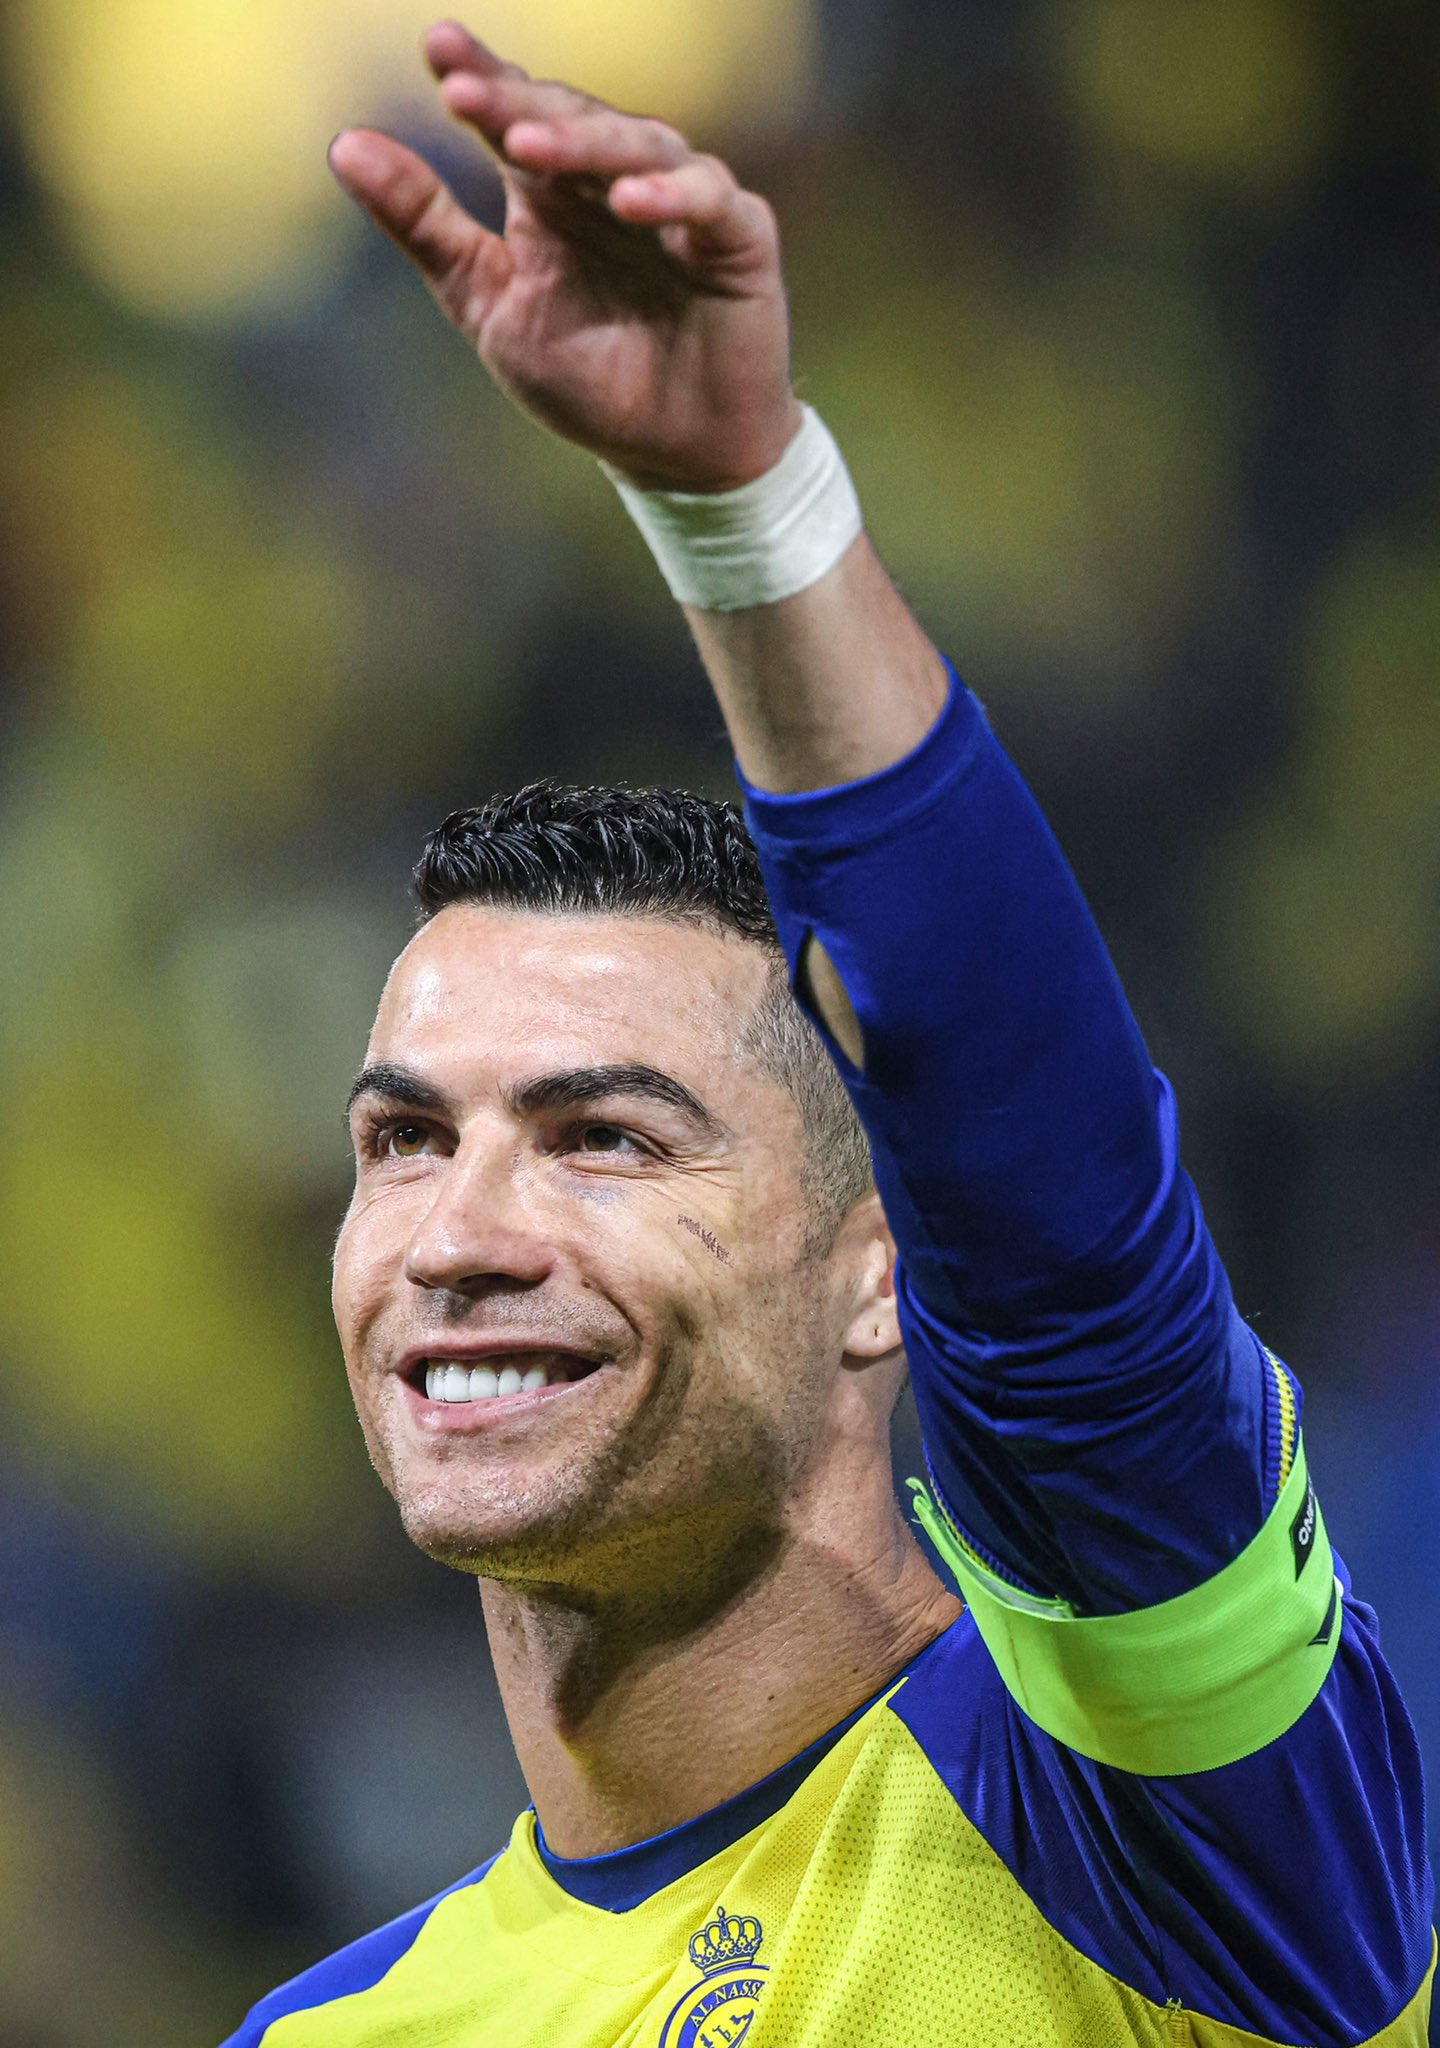 CĐV ca ngợi Ronaldo khi vượt qua cột mốc 500 bàn thắng trong sự nghiệp - Ảnh 3.